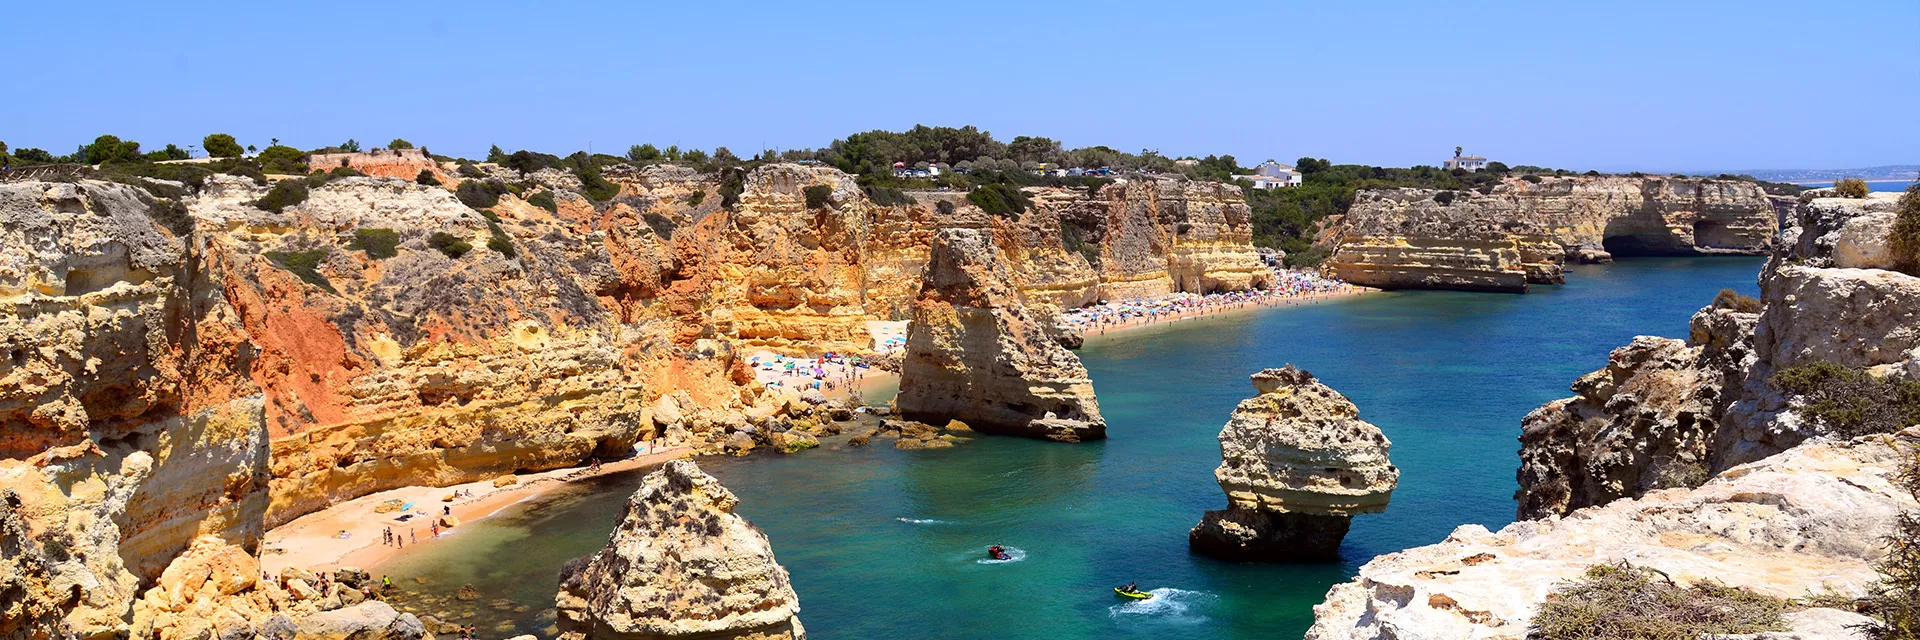 Location de vacances en Algarve